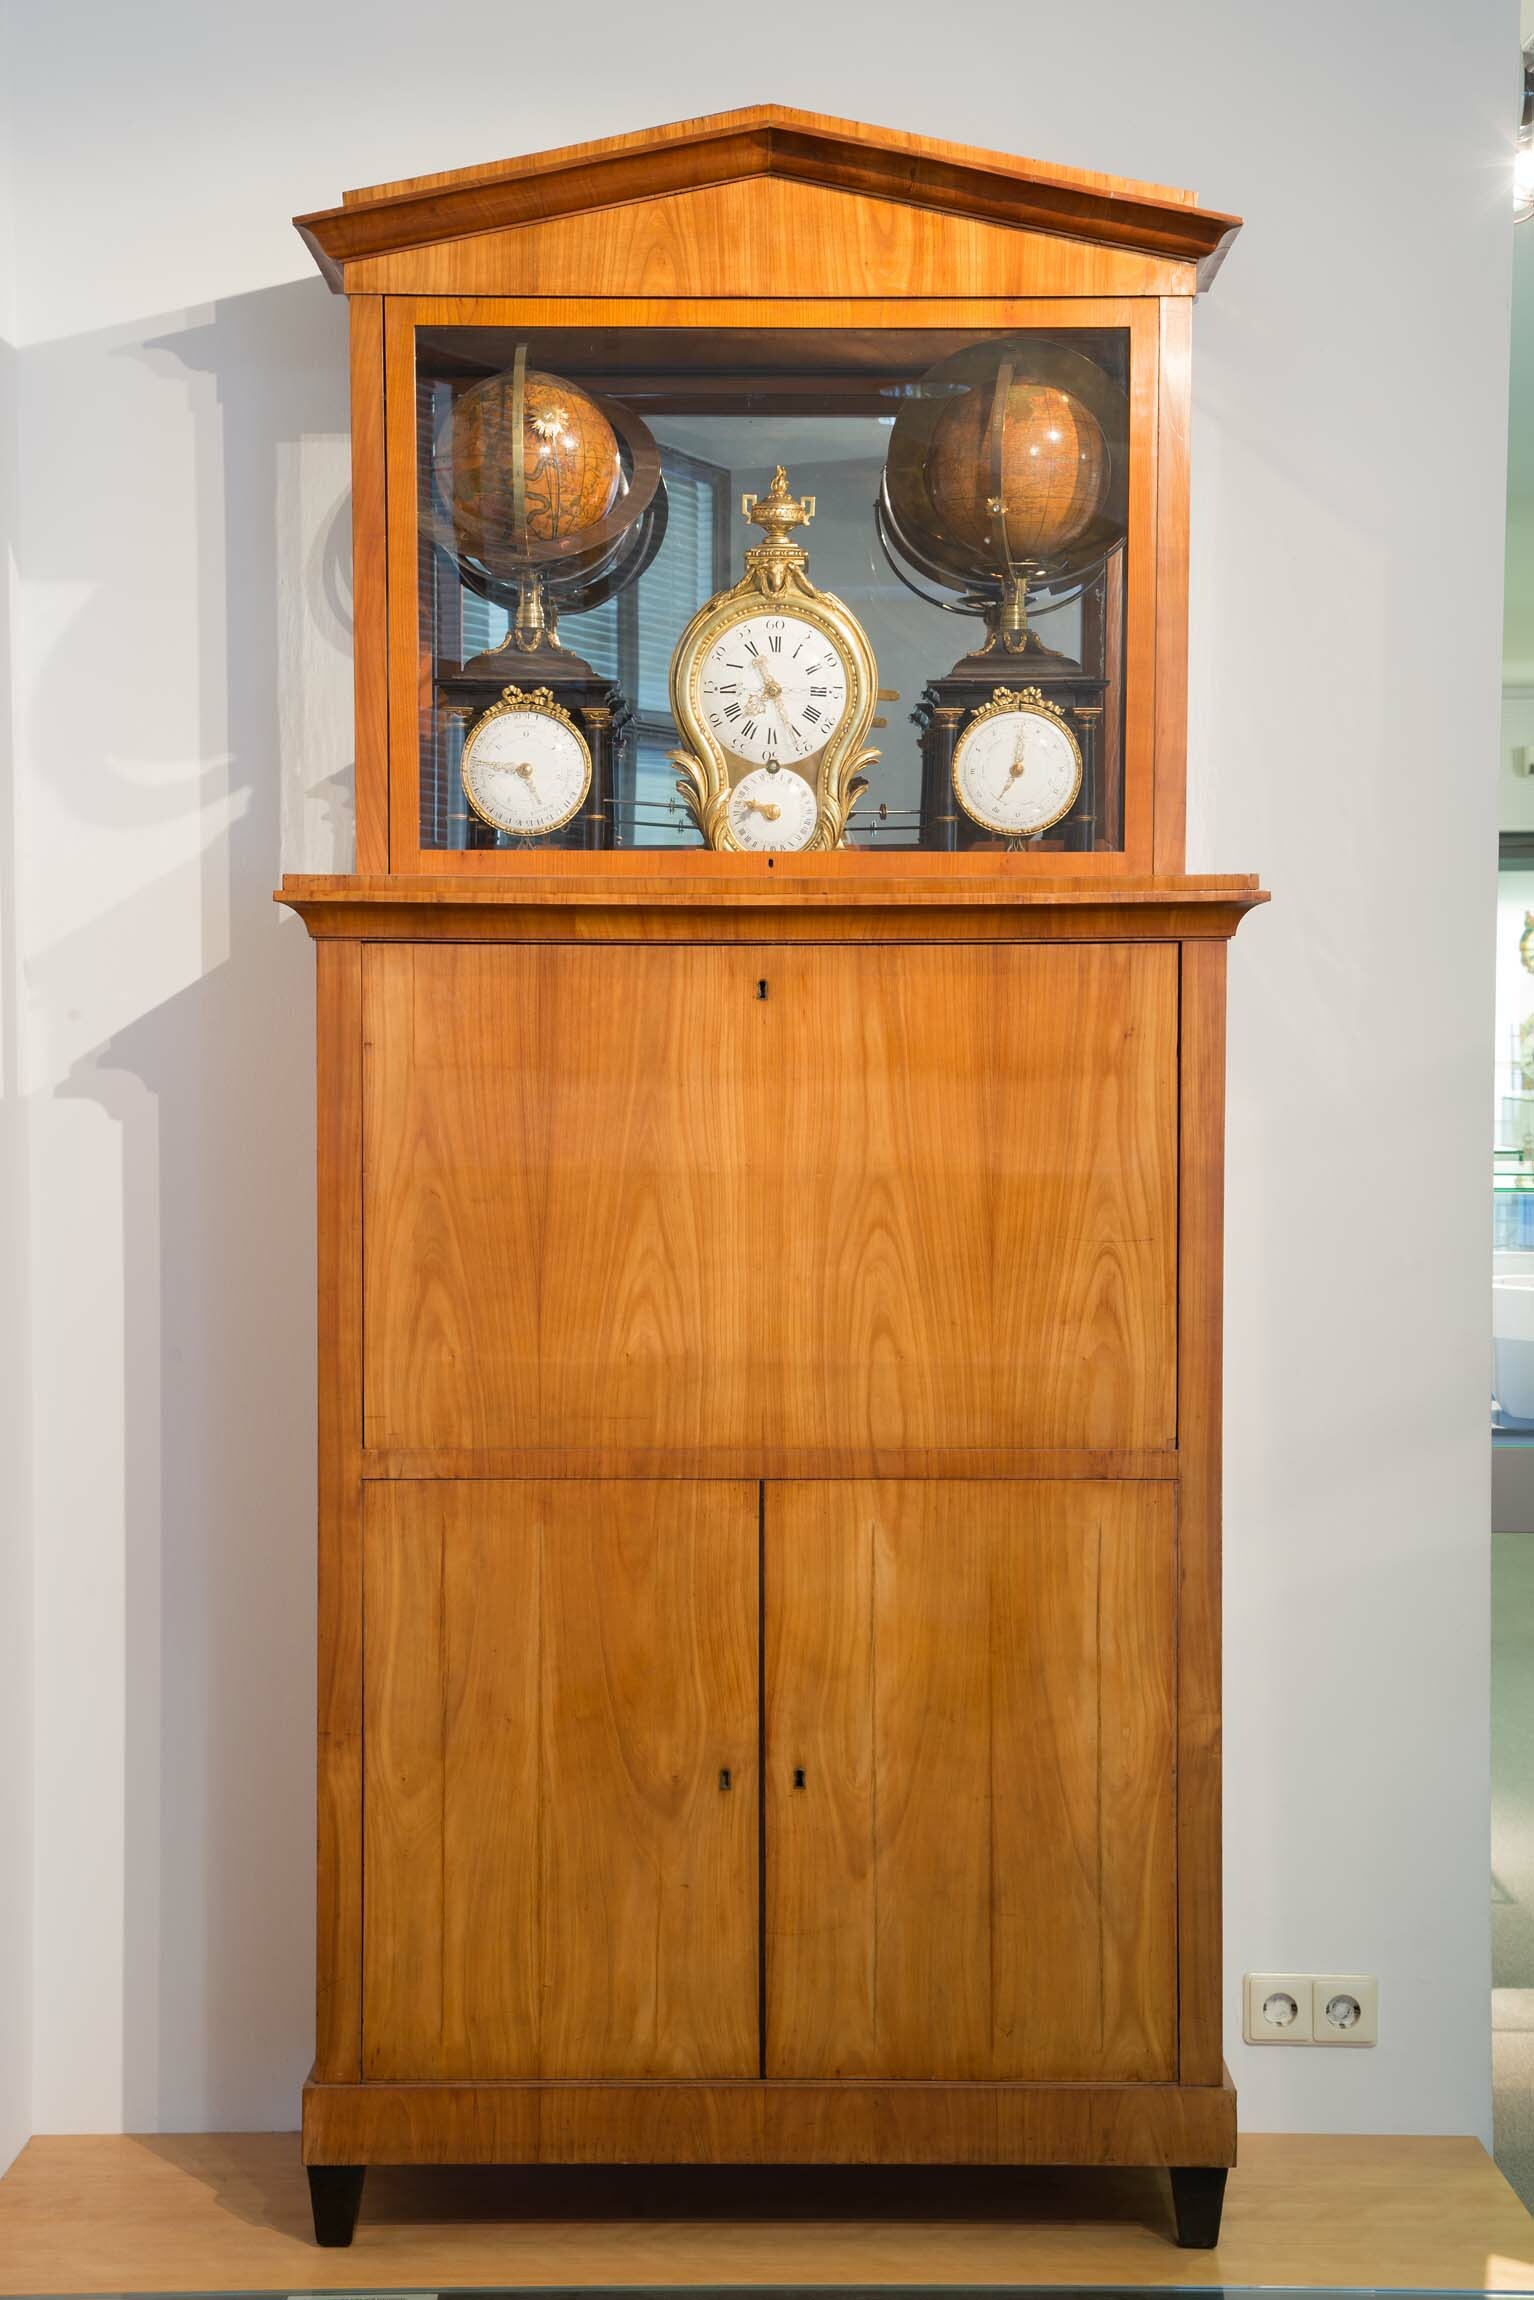 Astronomische Uhr, wohl Philipp Matthäus Hahn, Kornwestheim, um 1775 (Deutsches Uhrenmuseum CC BY-SA)